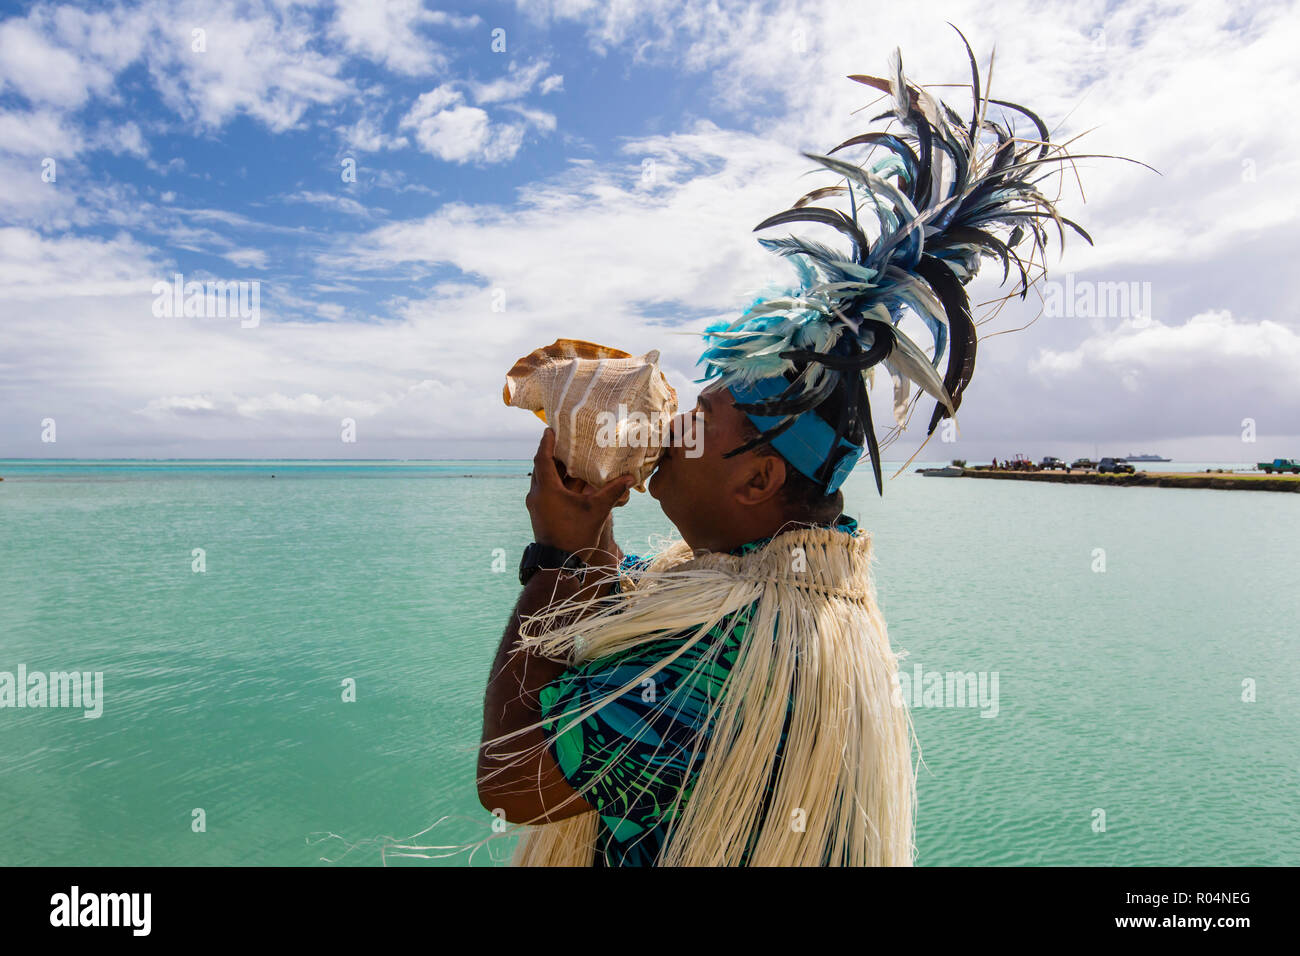 Una conchiglia guerriero di soffiaggio che accoglie gli ospiti di Aitutaki, Isole Cook, a sud delle Isole del Pacifico e del Pacifico Foto Stock